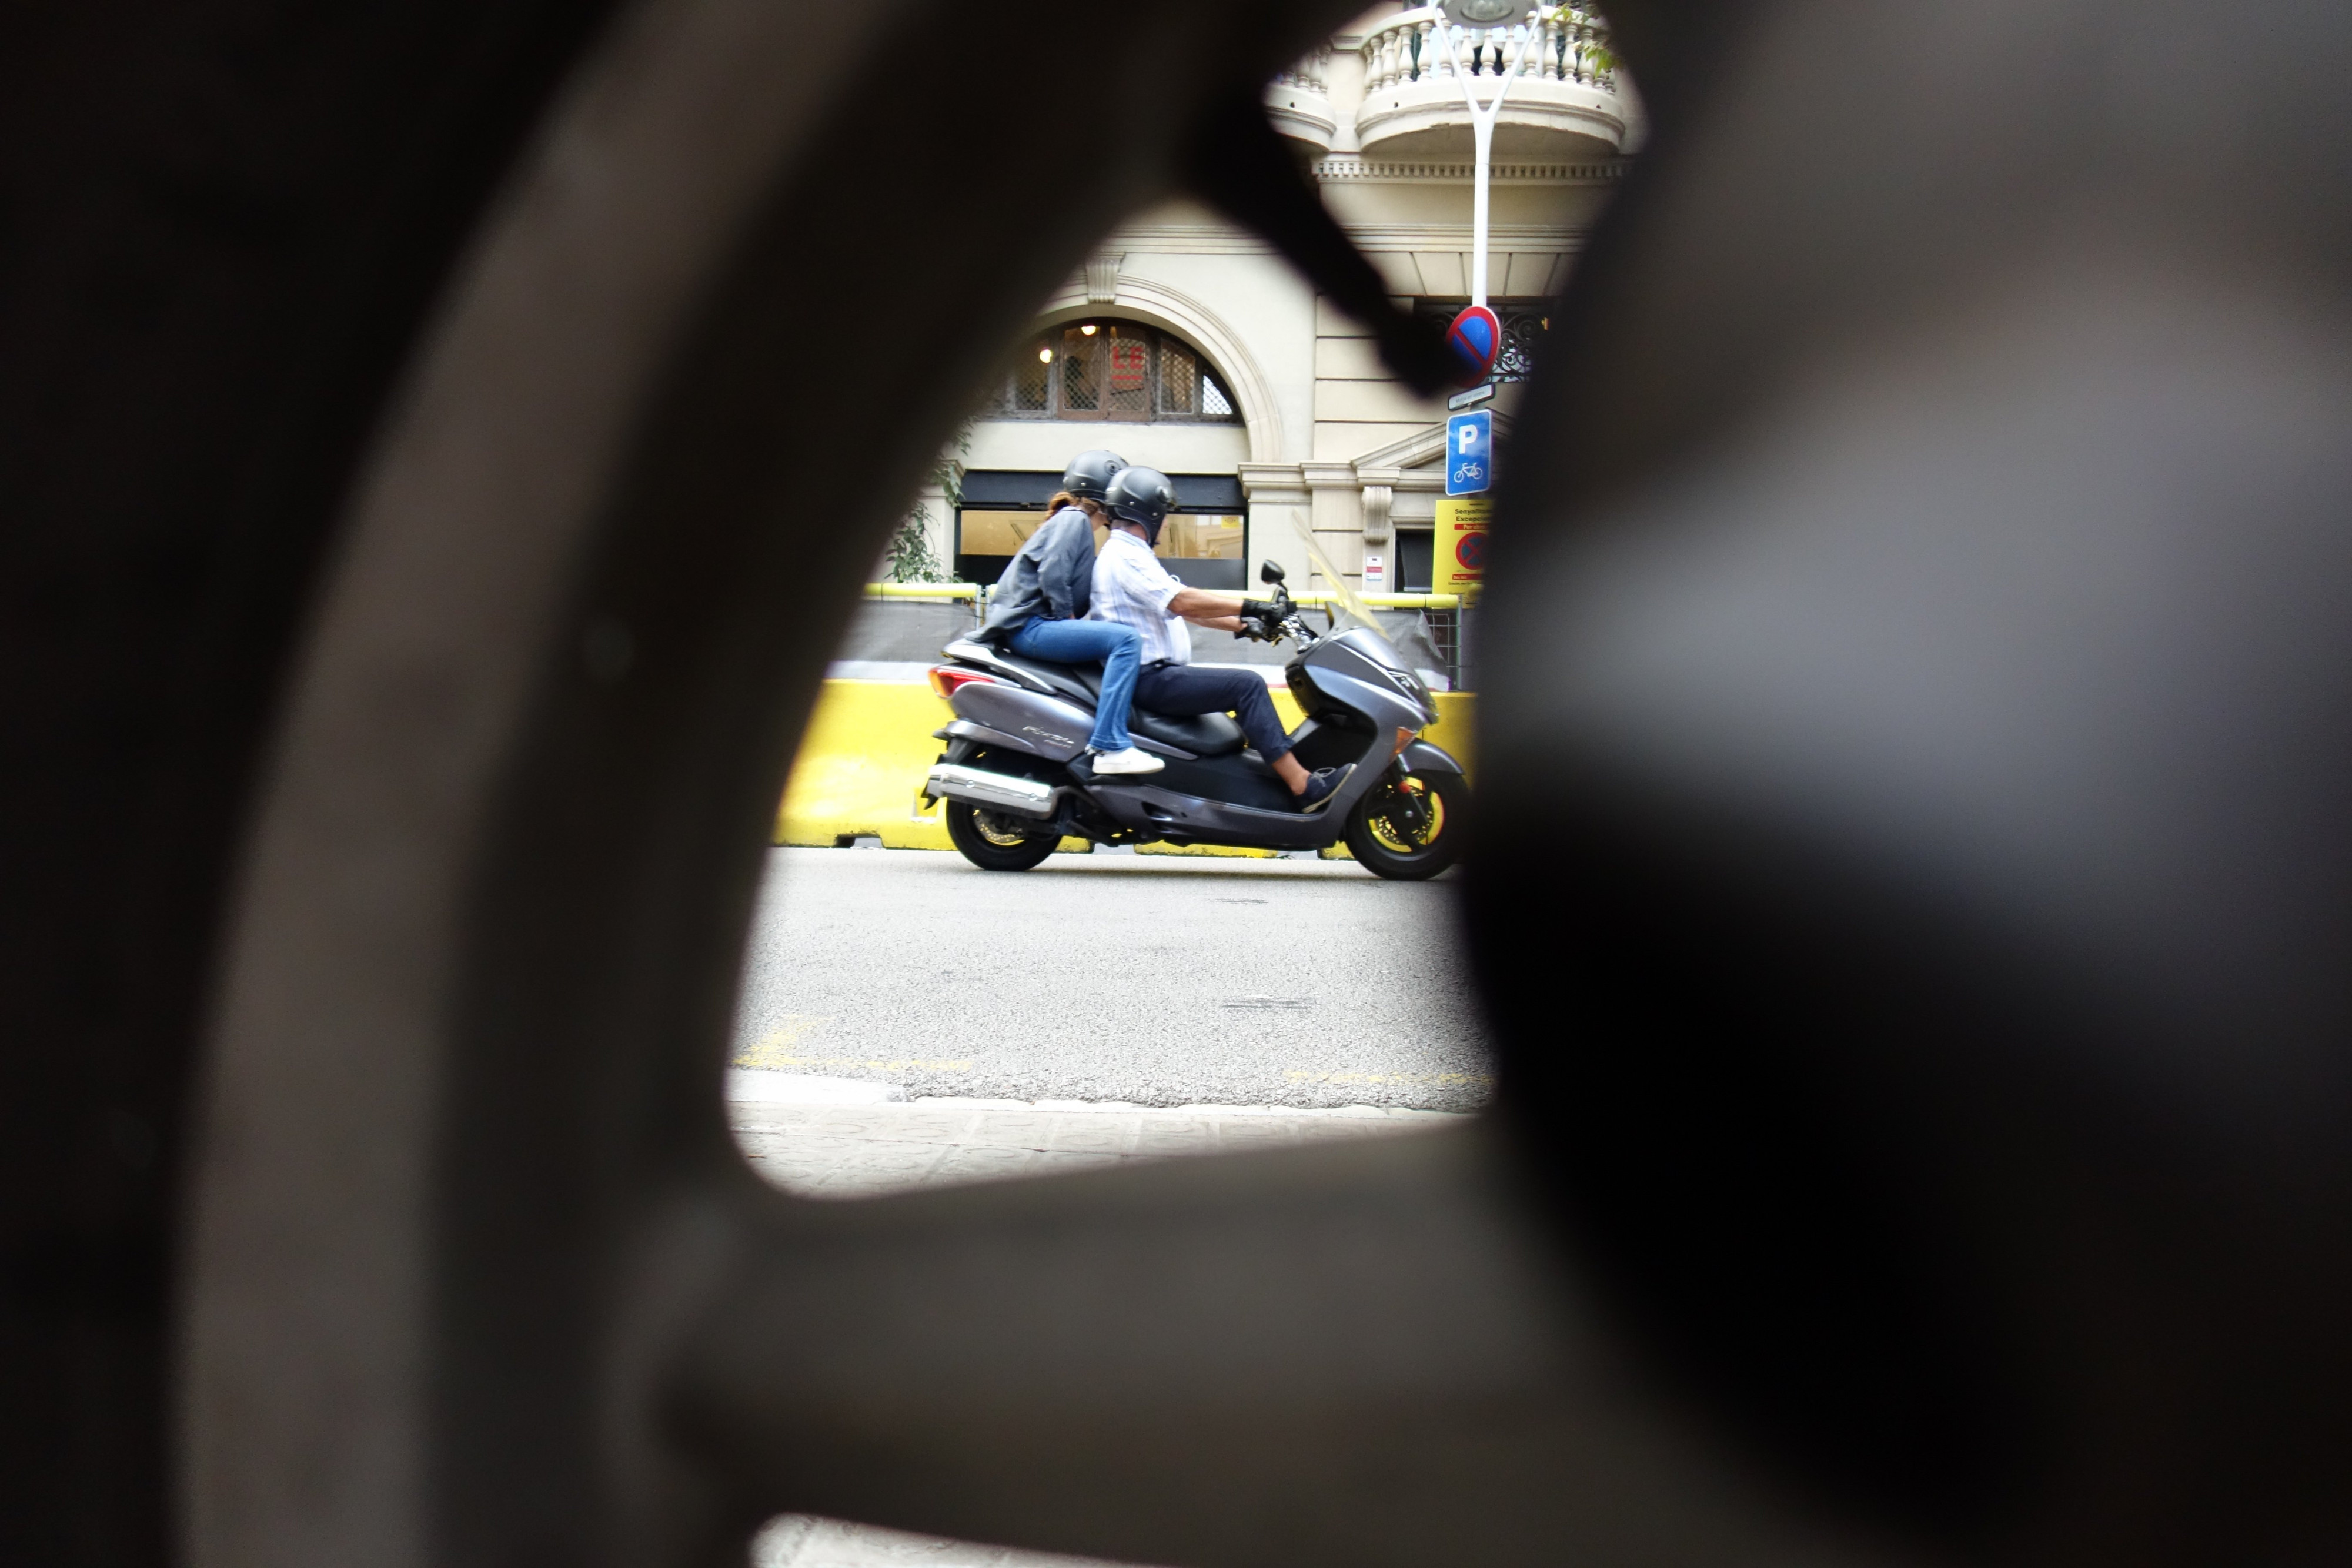 Una moto circula por una de las calles de Barcelona / DGM